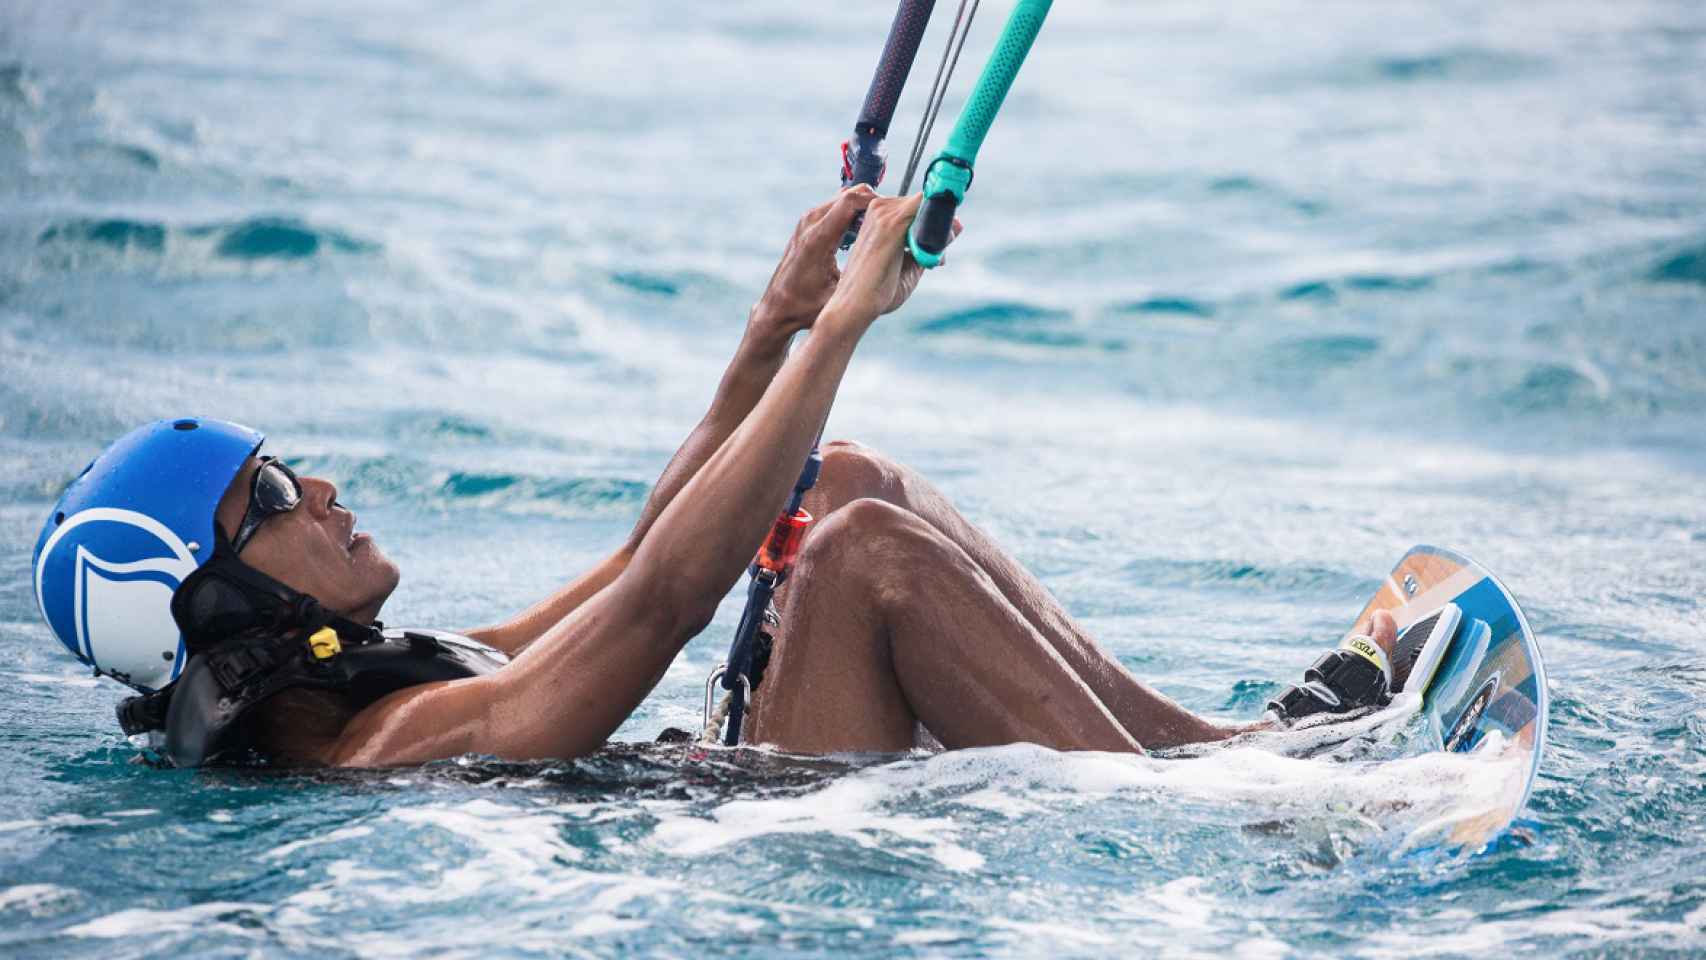 Obama practicando el kitsurf en las Islas Vírgenes